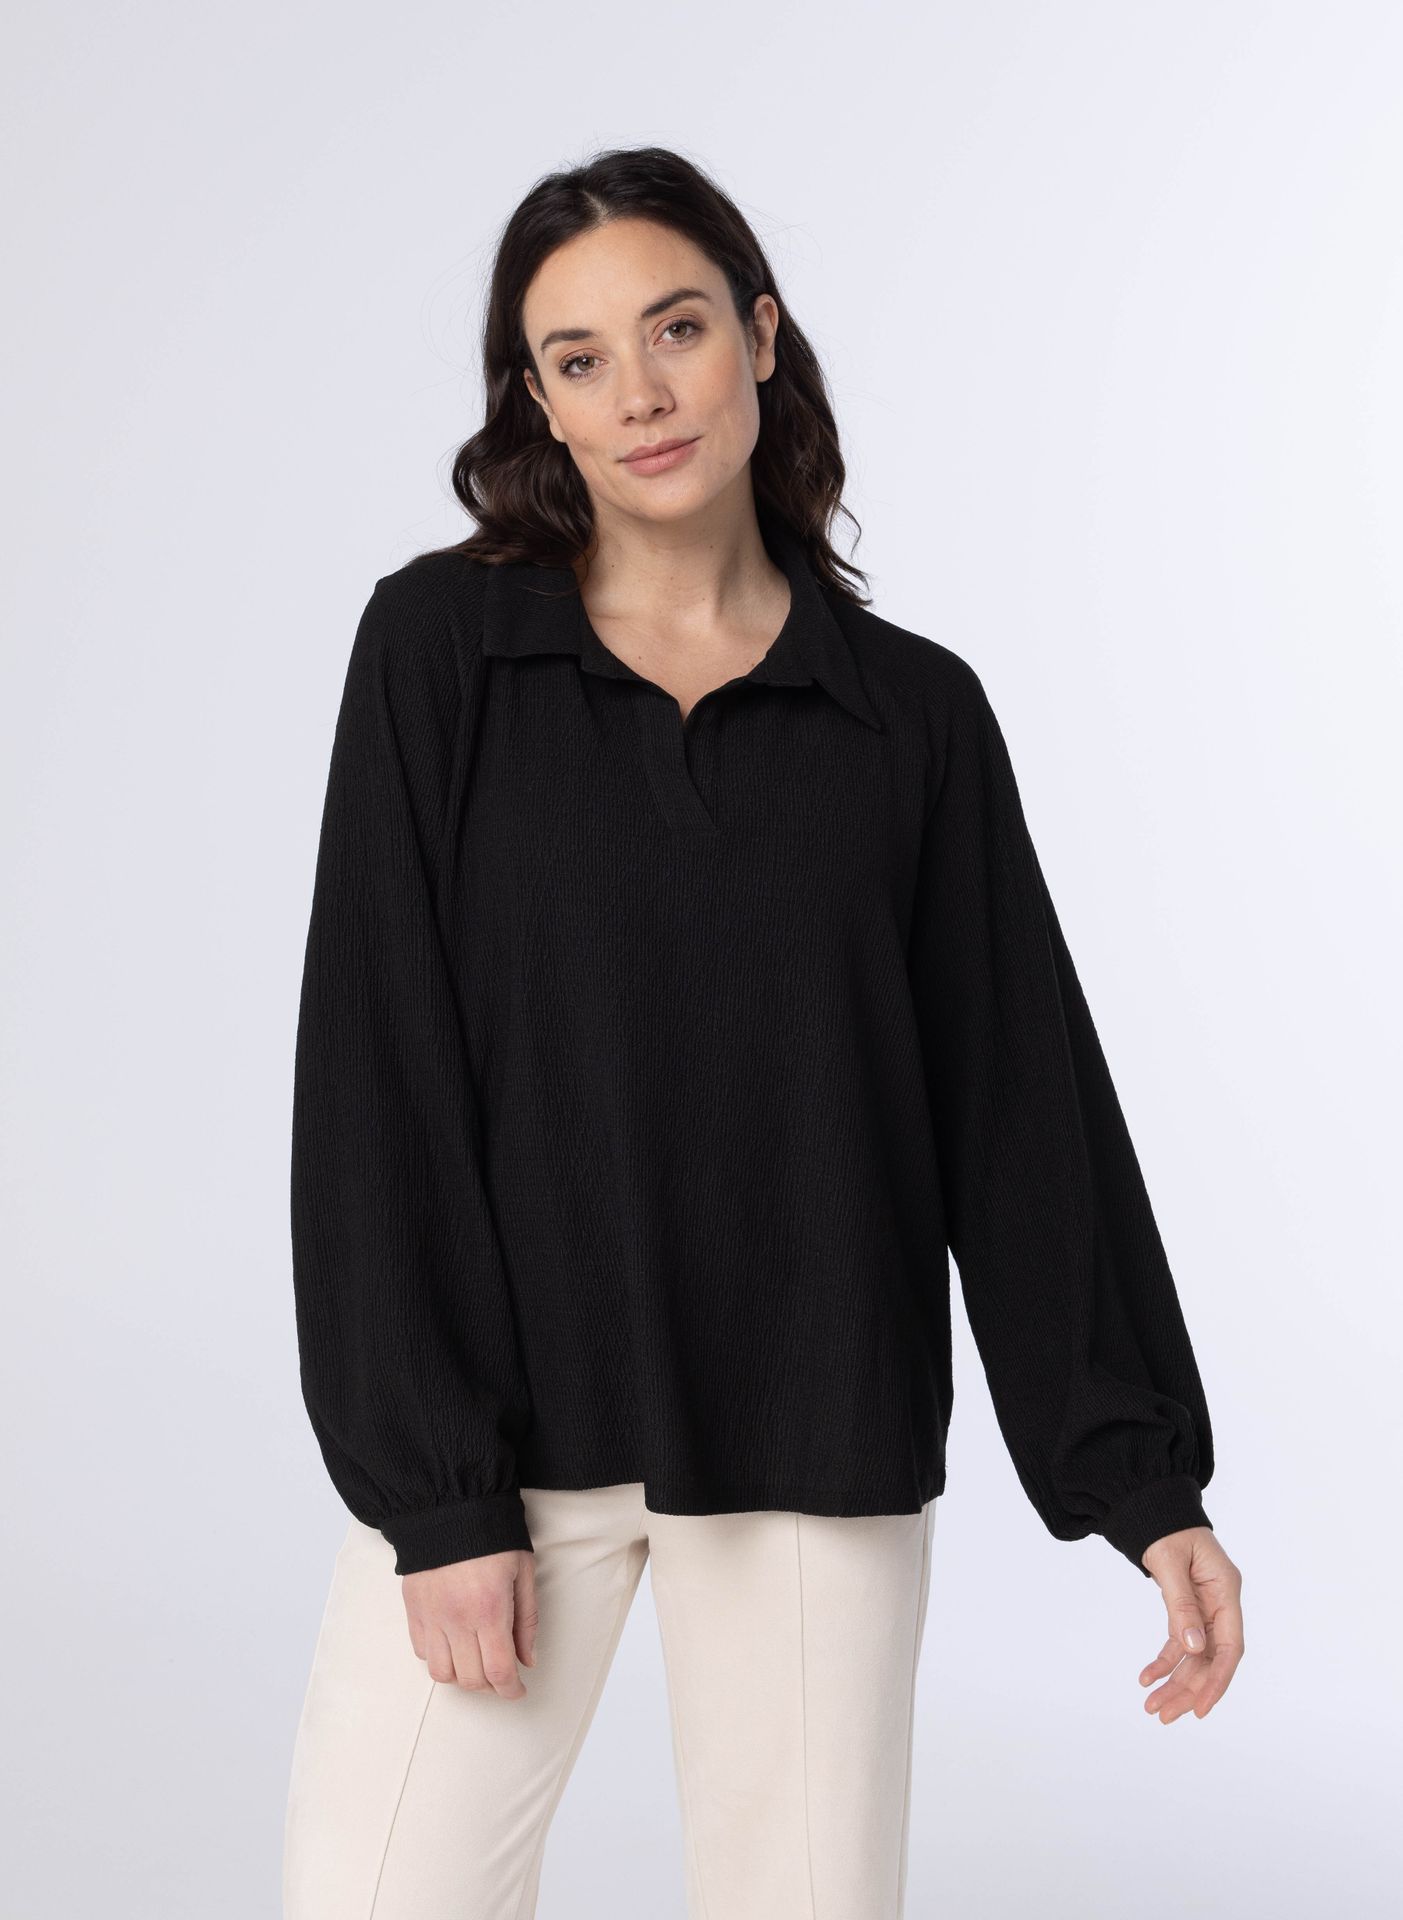 Norah Zwarte blouse met pofmouwen black 214092-001